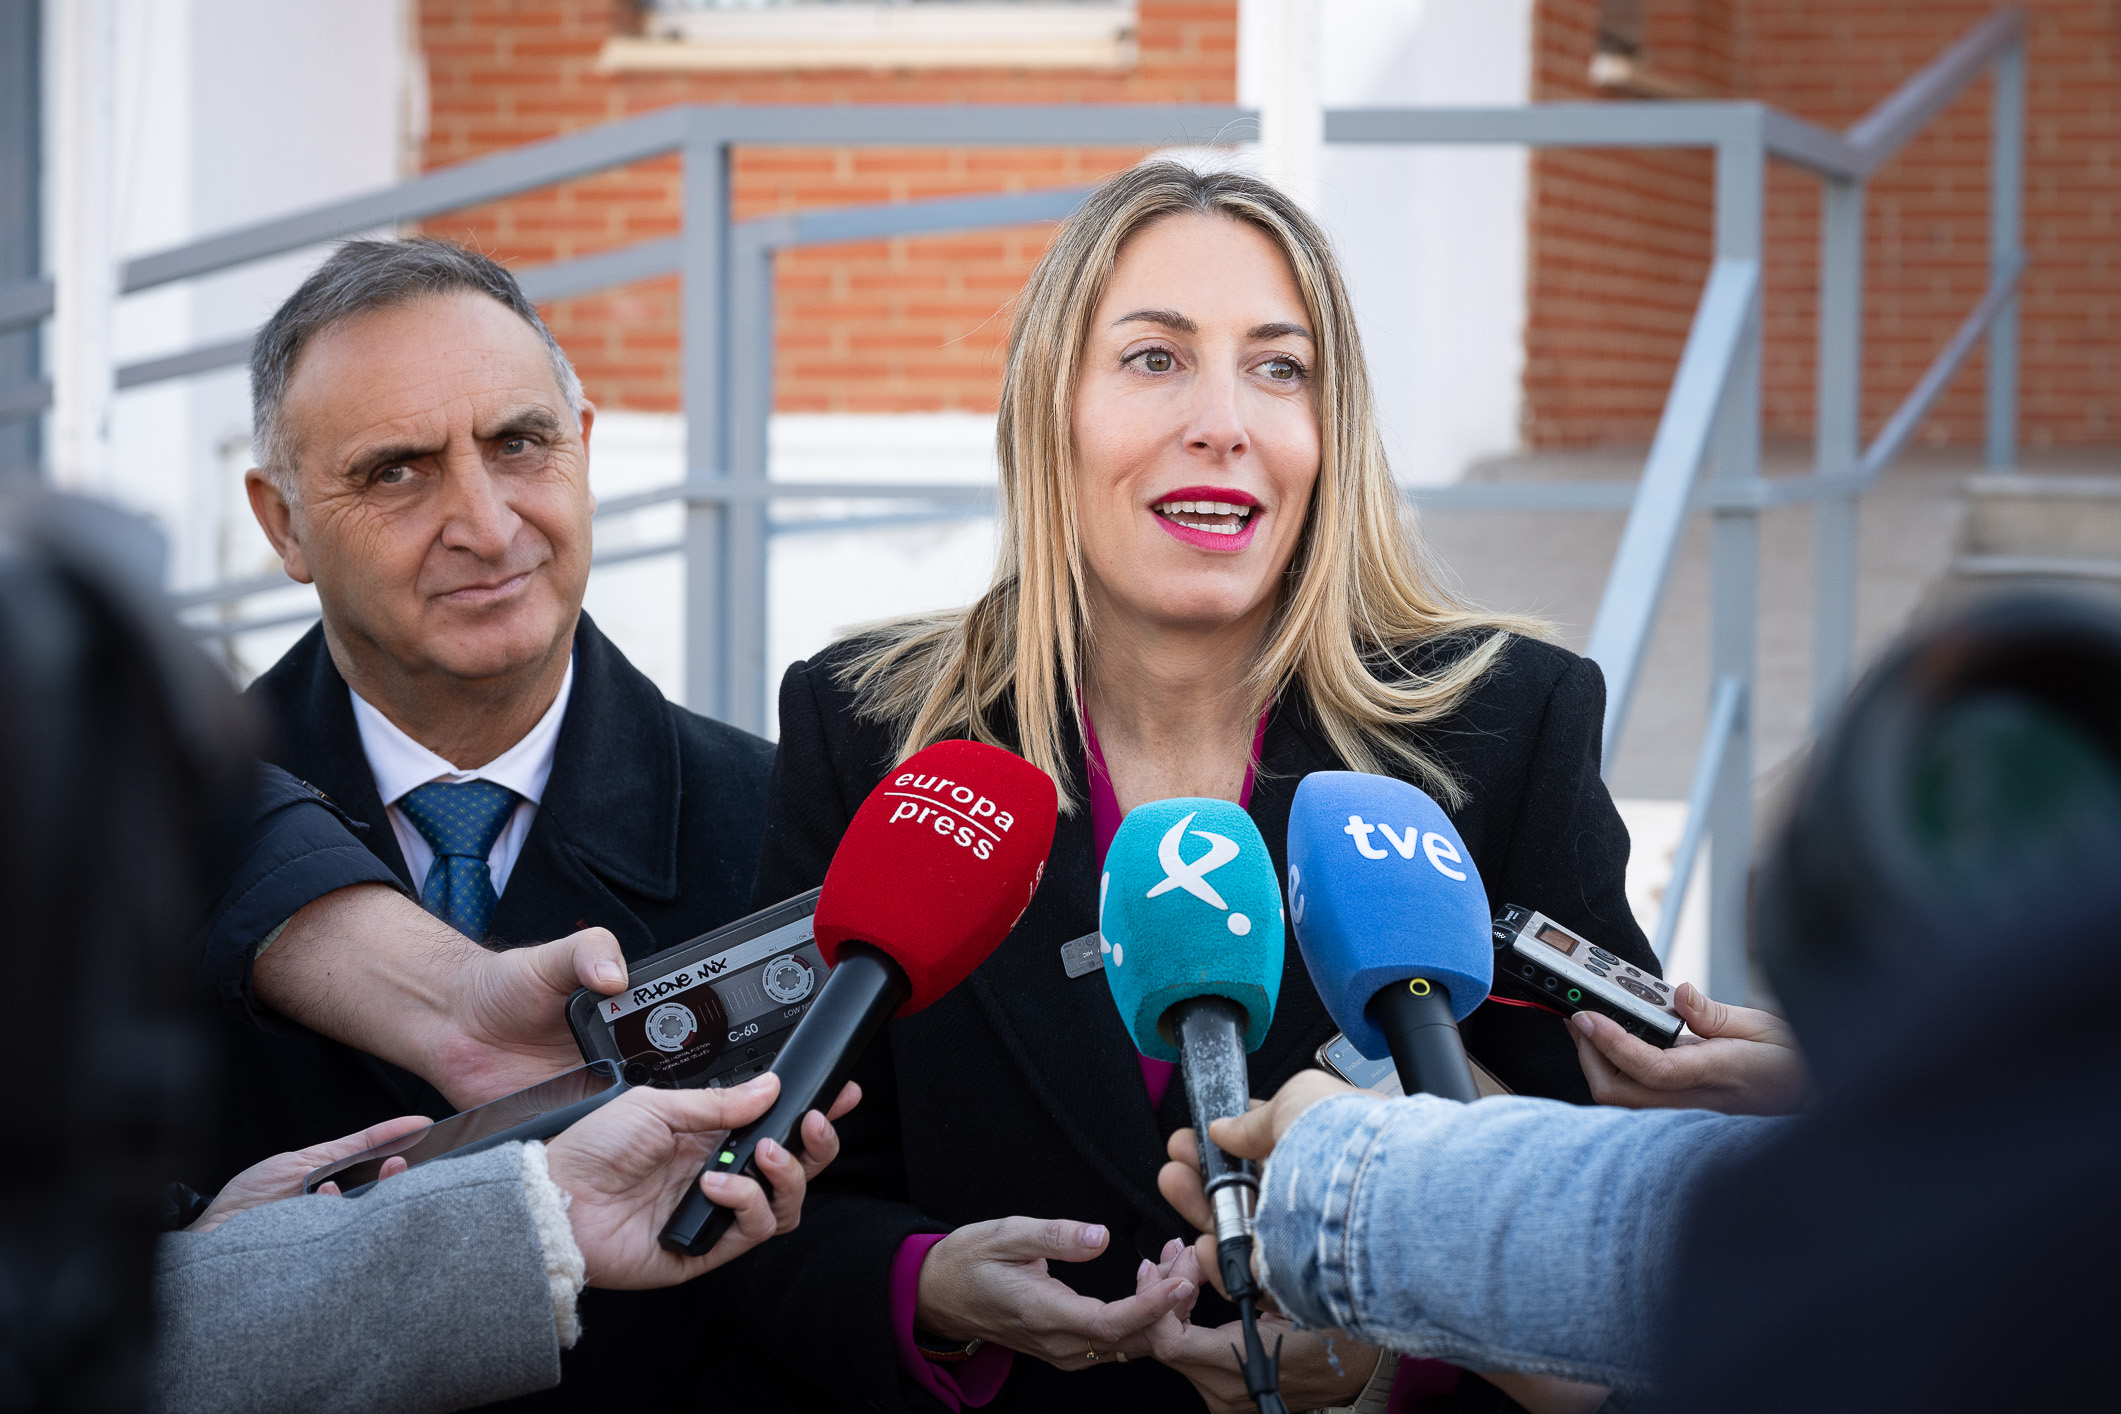 La presidenta de la Junta, María Guardiola, atiende a los medios durante su visita al Centro Penitenciario Cáceres.